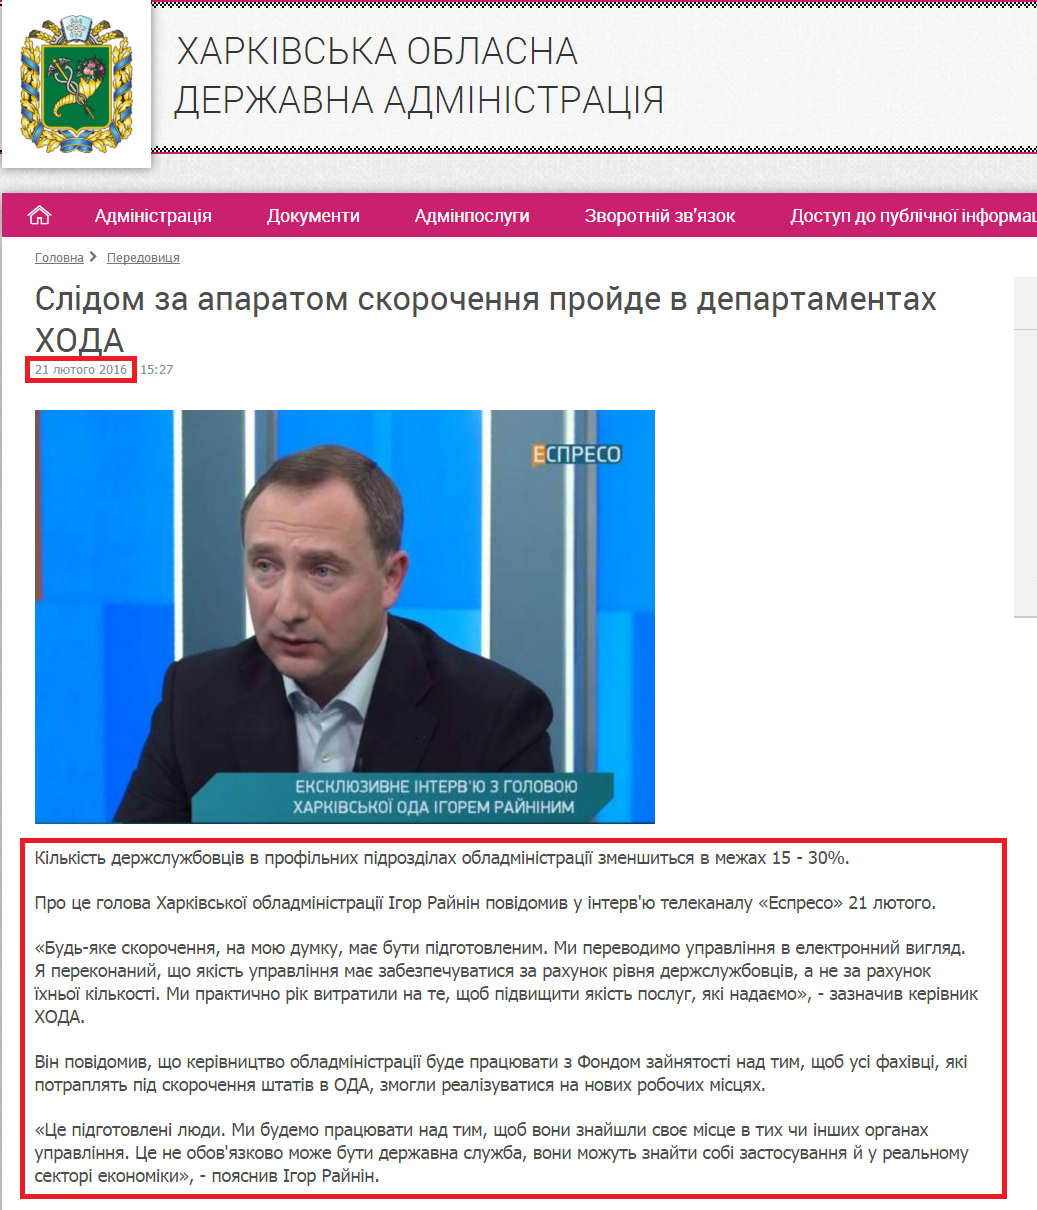 http://kharkivoda.gov.ua/36/79178